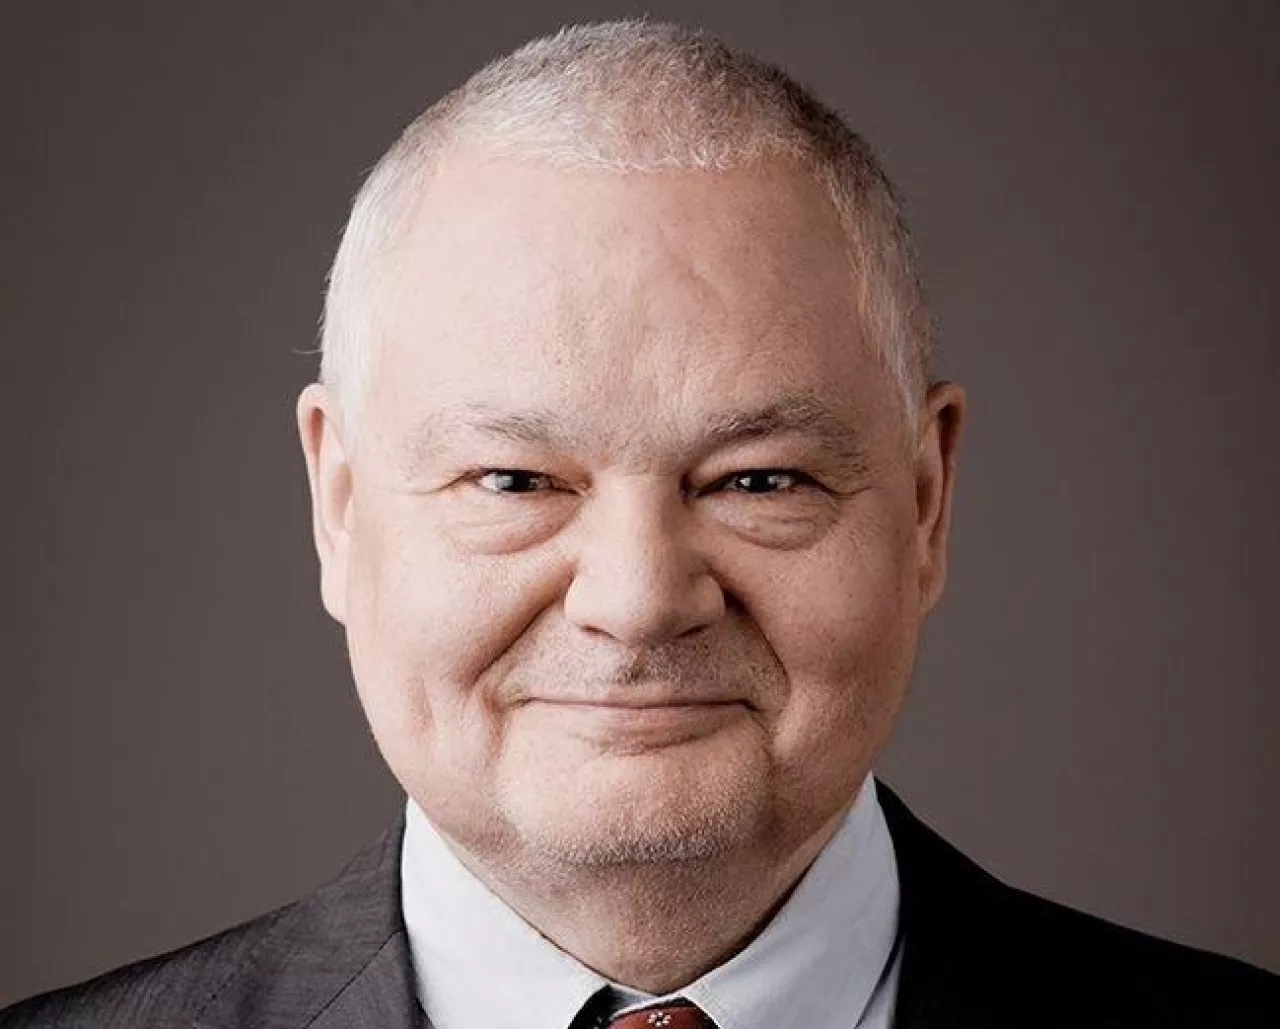 &lt;p&gt;Adam Glapiński, prezes Narodowego Banku Polskiego (NBP)&lt;/p&gt;